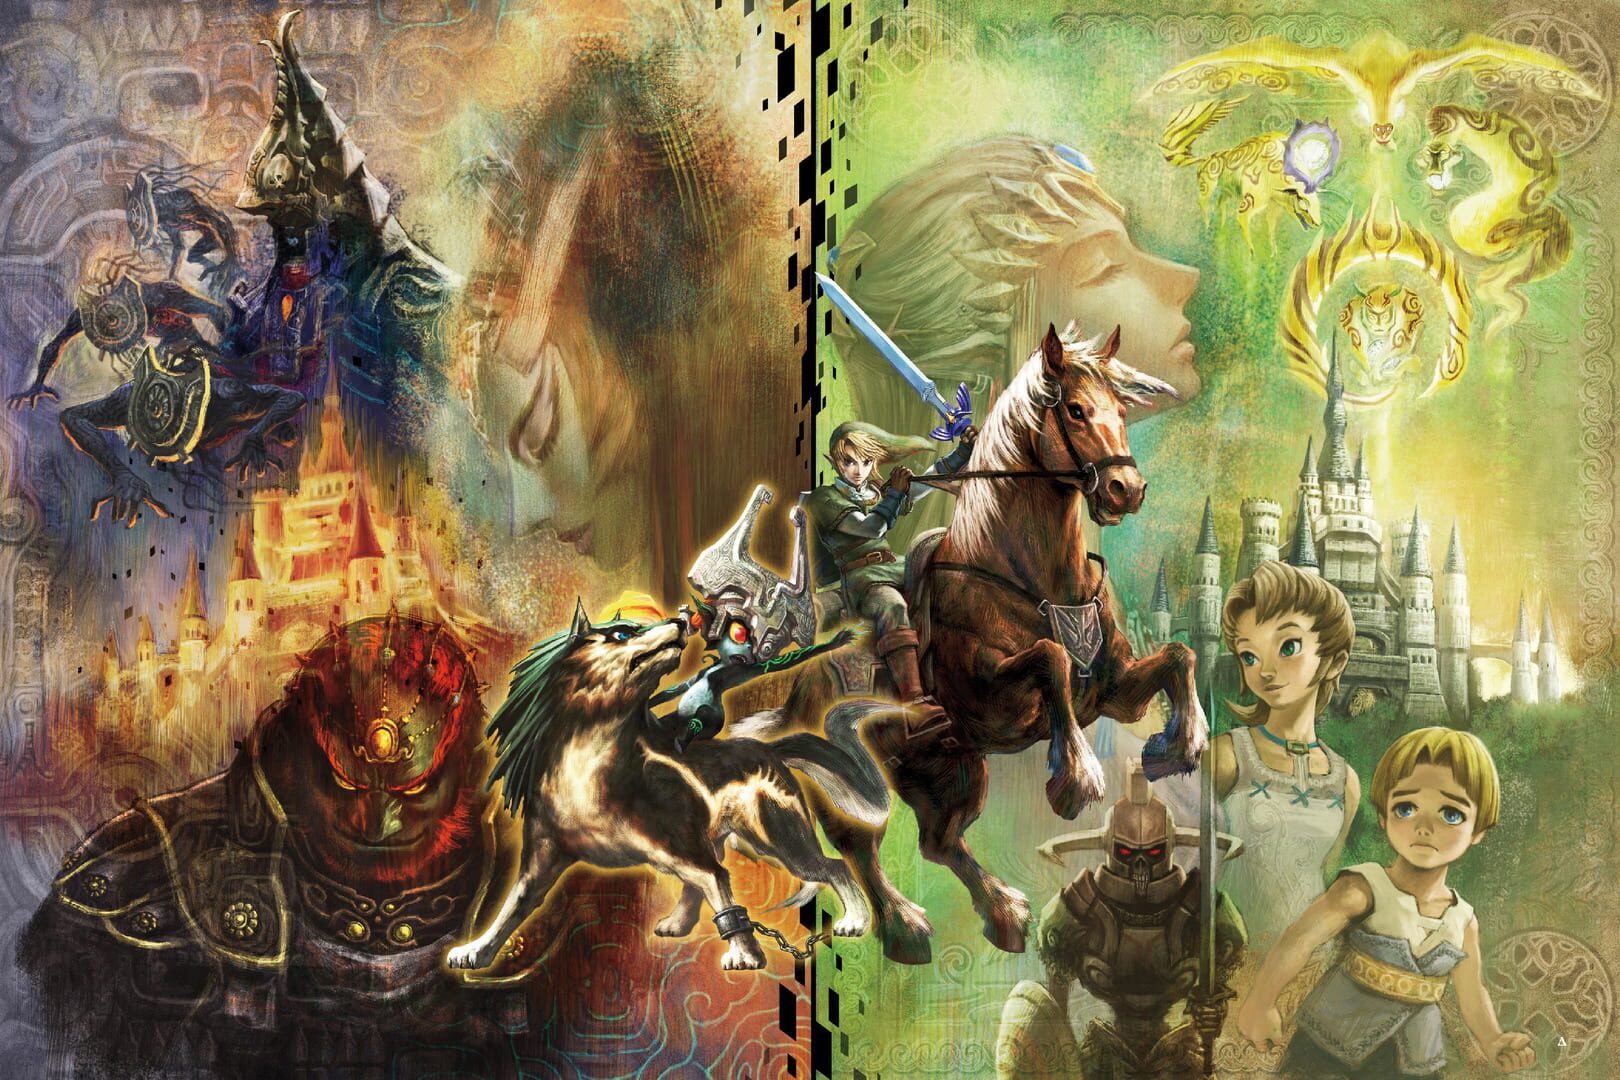 Artwork for The Legend of Zelda: Twilight Princess HD